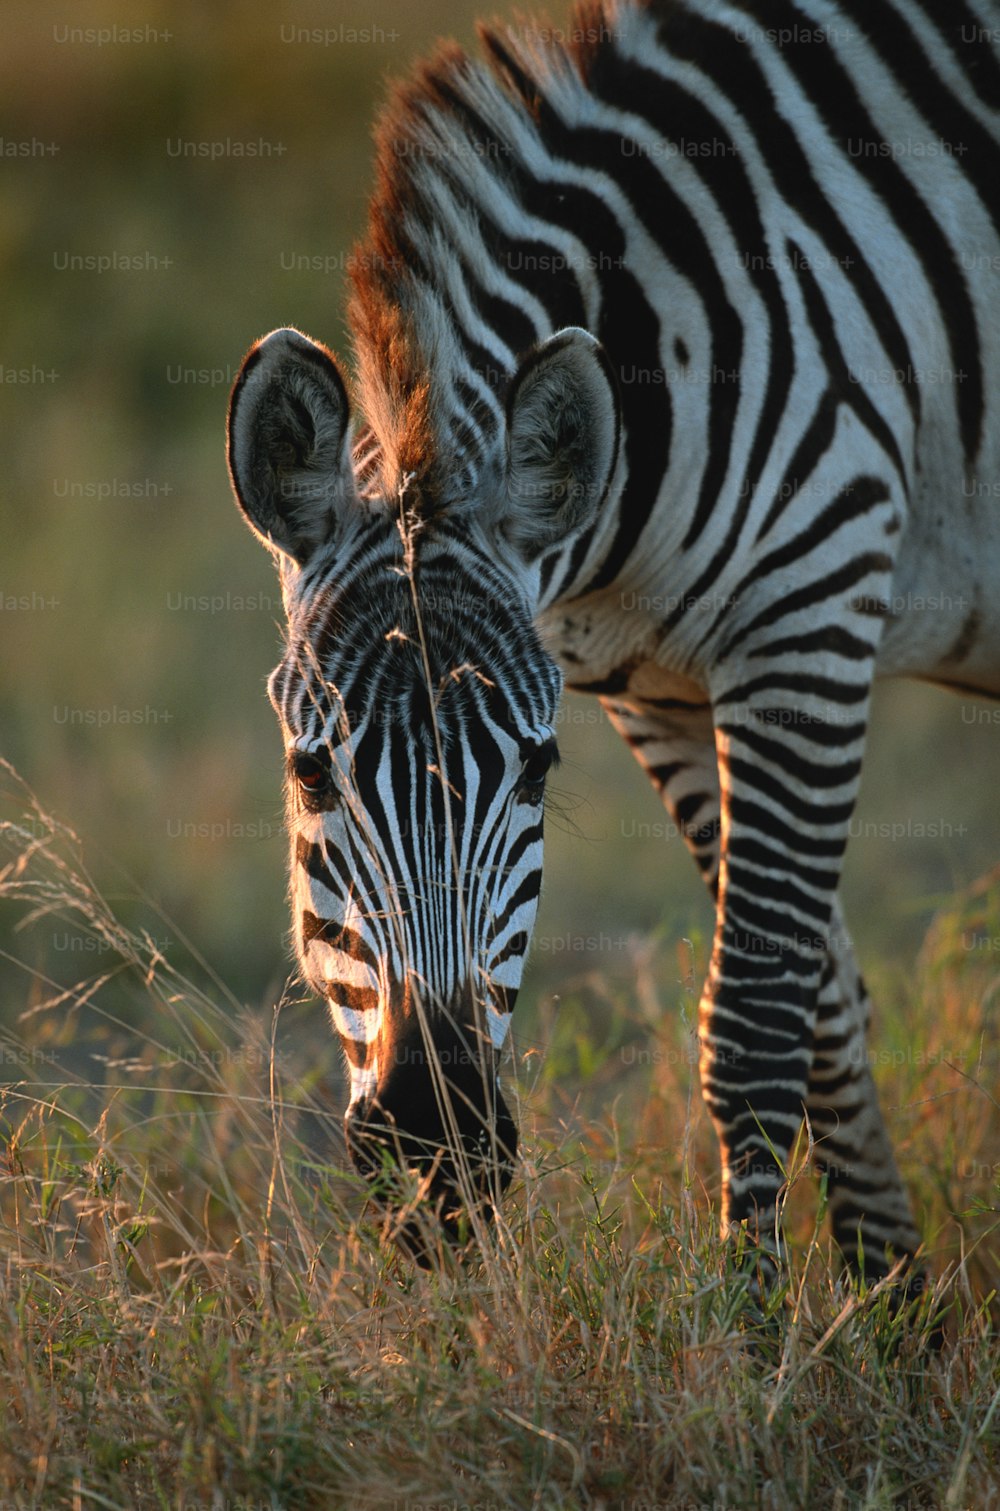 a zebra grazing in a field of grass